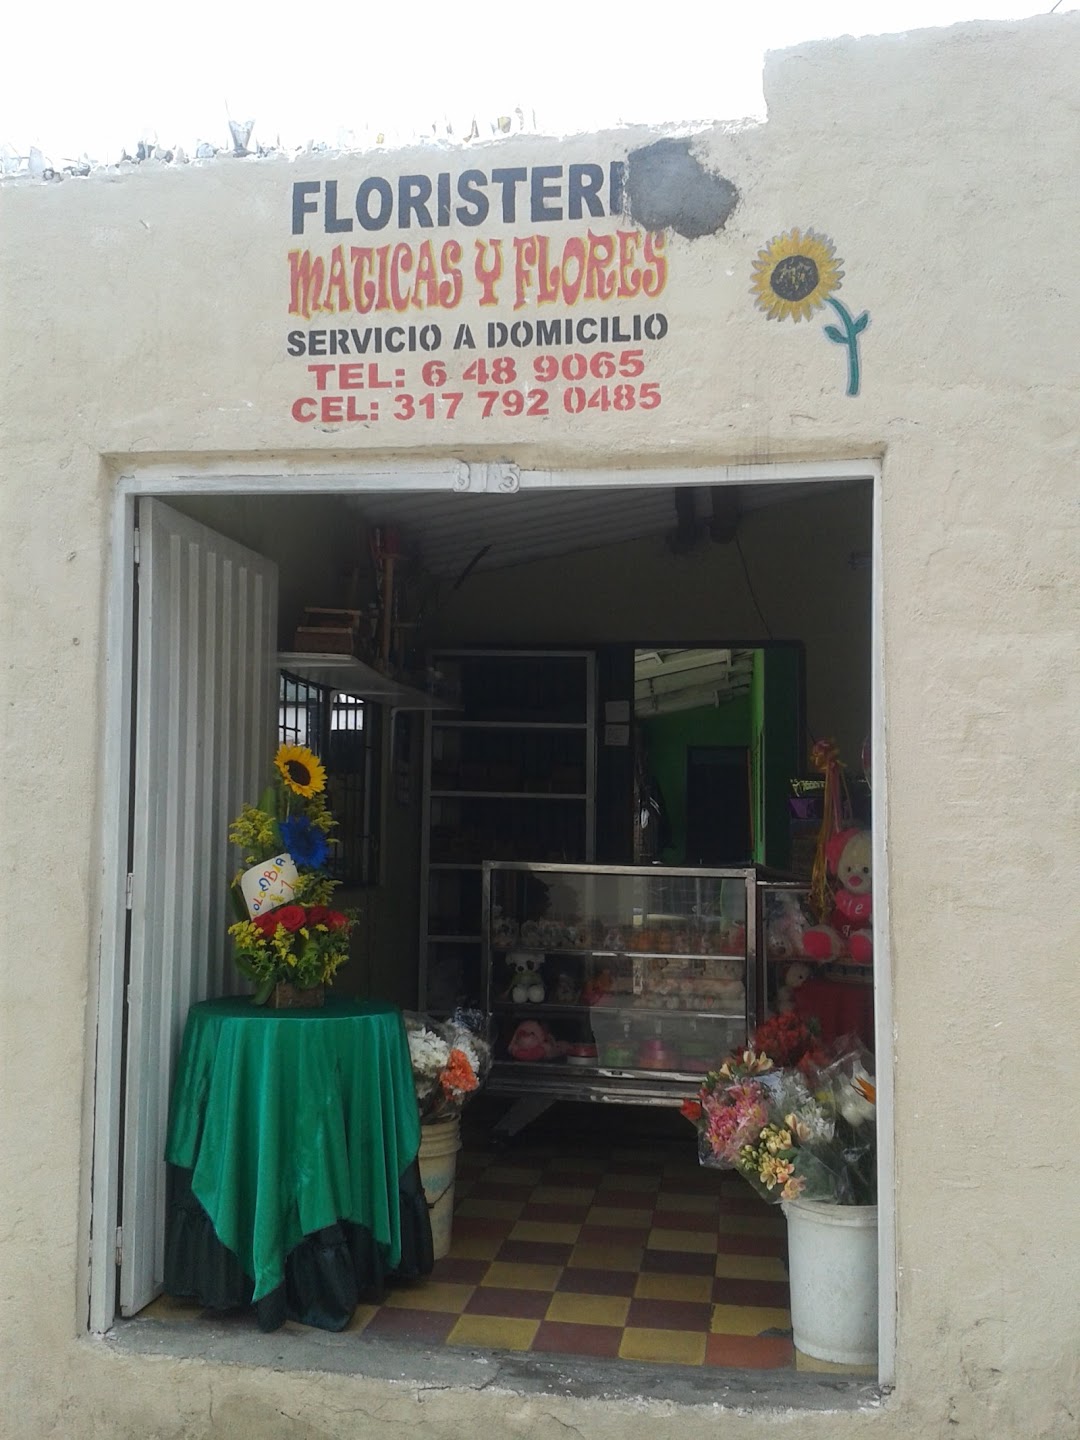 Floristeria Maticas Y Flores